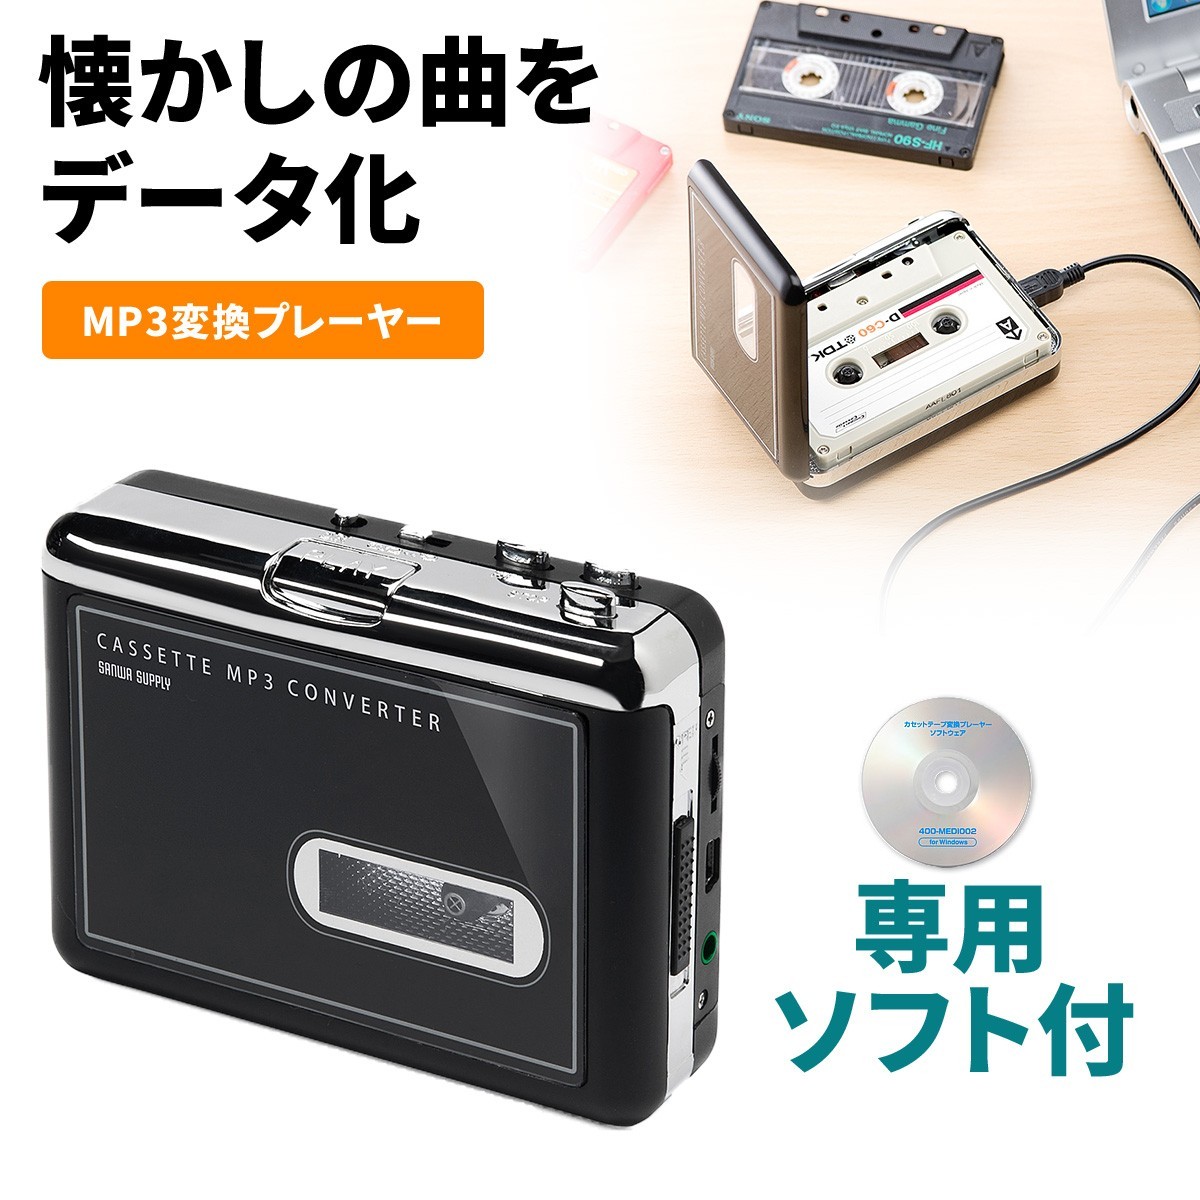 永遠の定番モデルカセットテープデジタル化 カセットテープ変換 MP3変換プレーヤー コンバーター EZ4-MEDI002 ポータブルオーディオ 